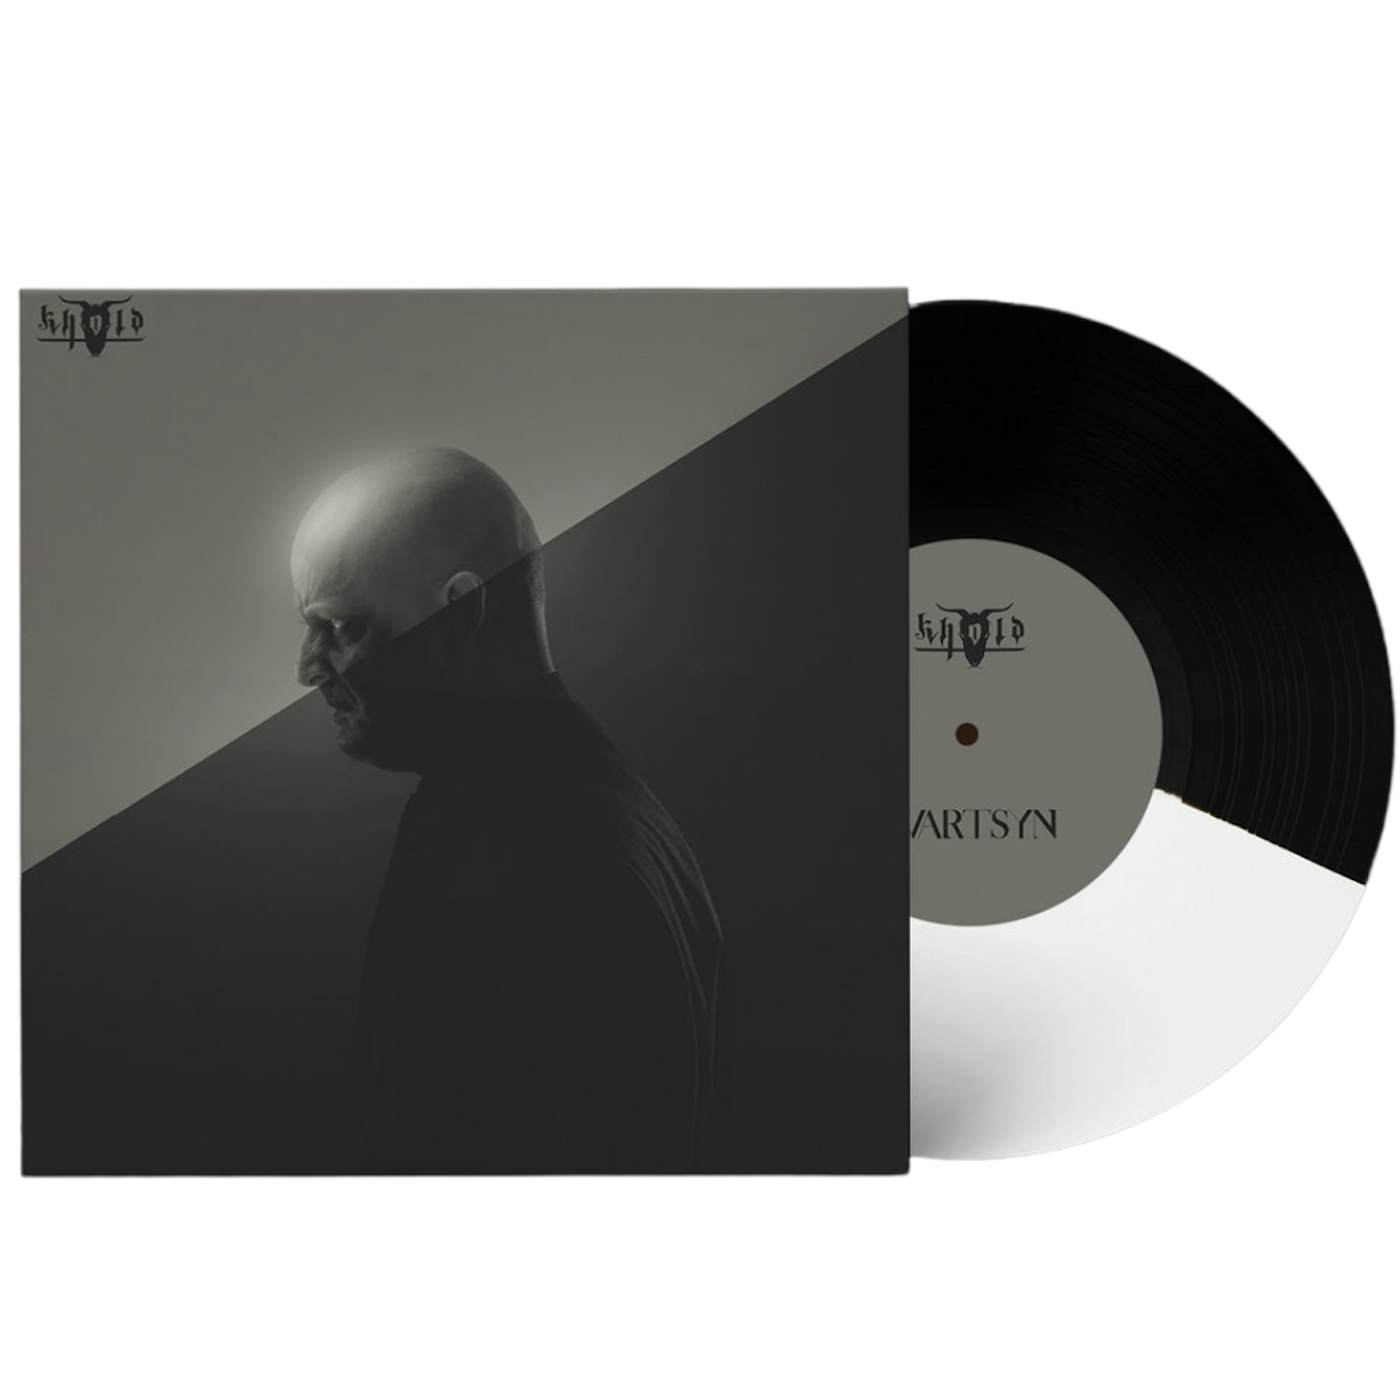 Khold - Svartsyn (Black/White Vinyl)